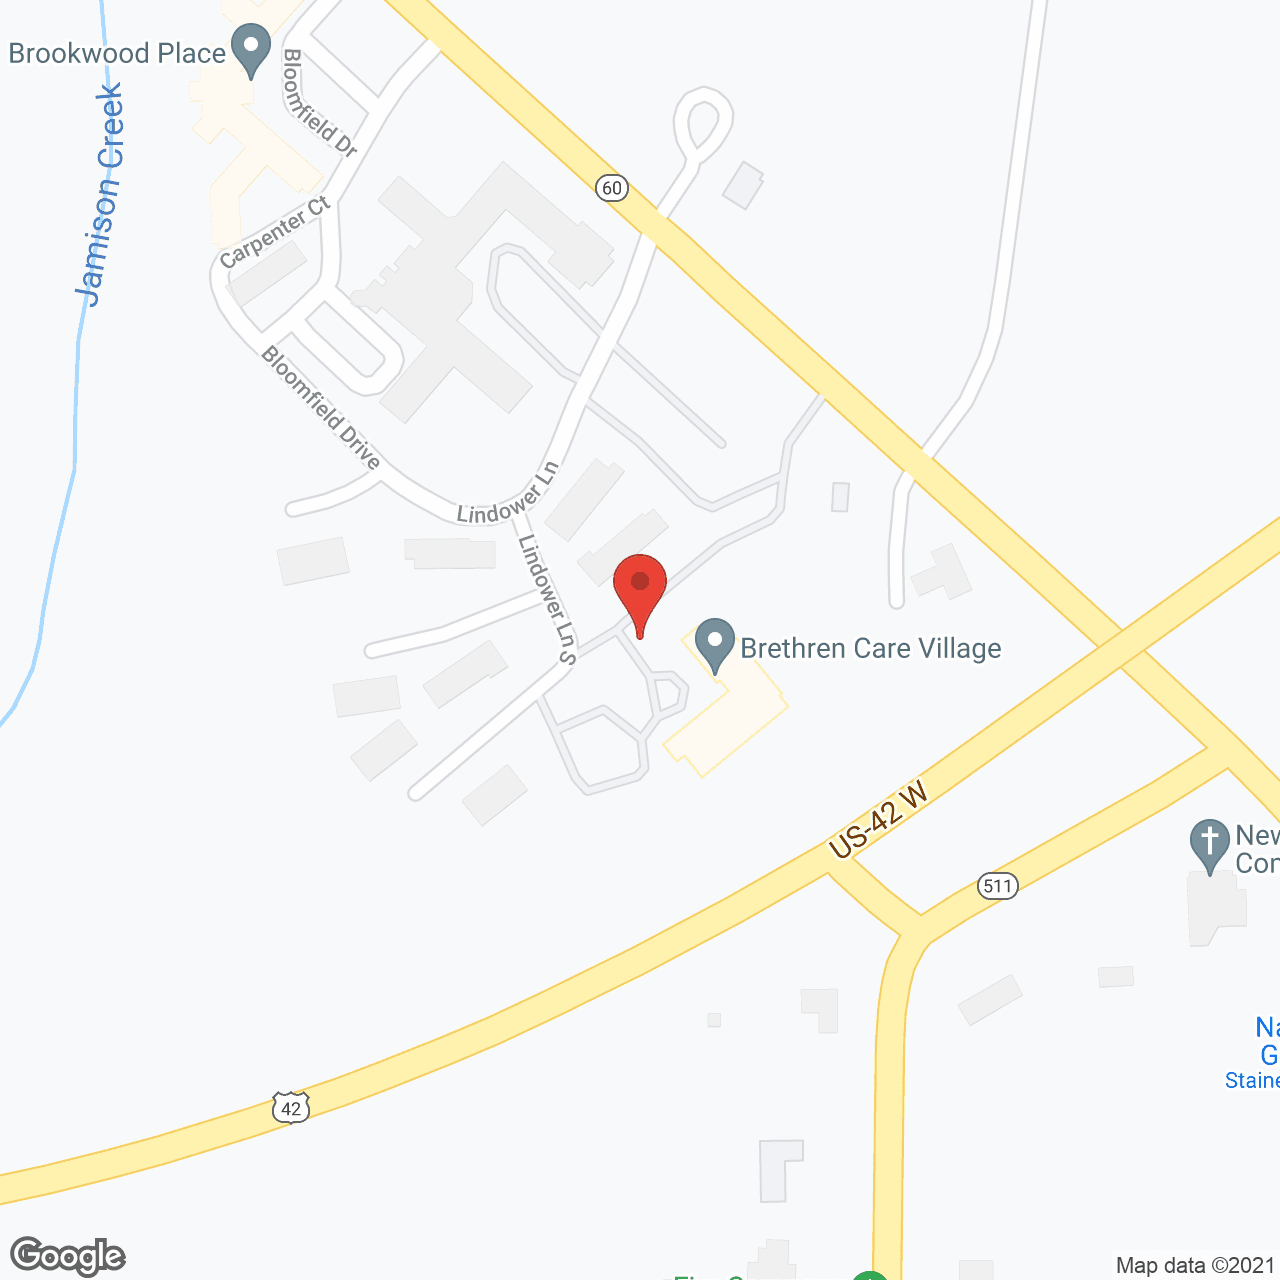 Brethren Care Village in google map